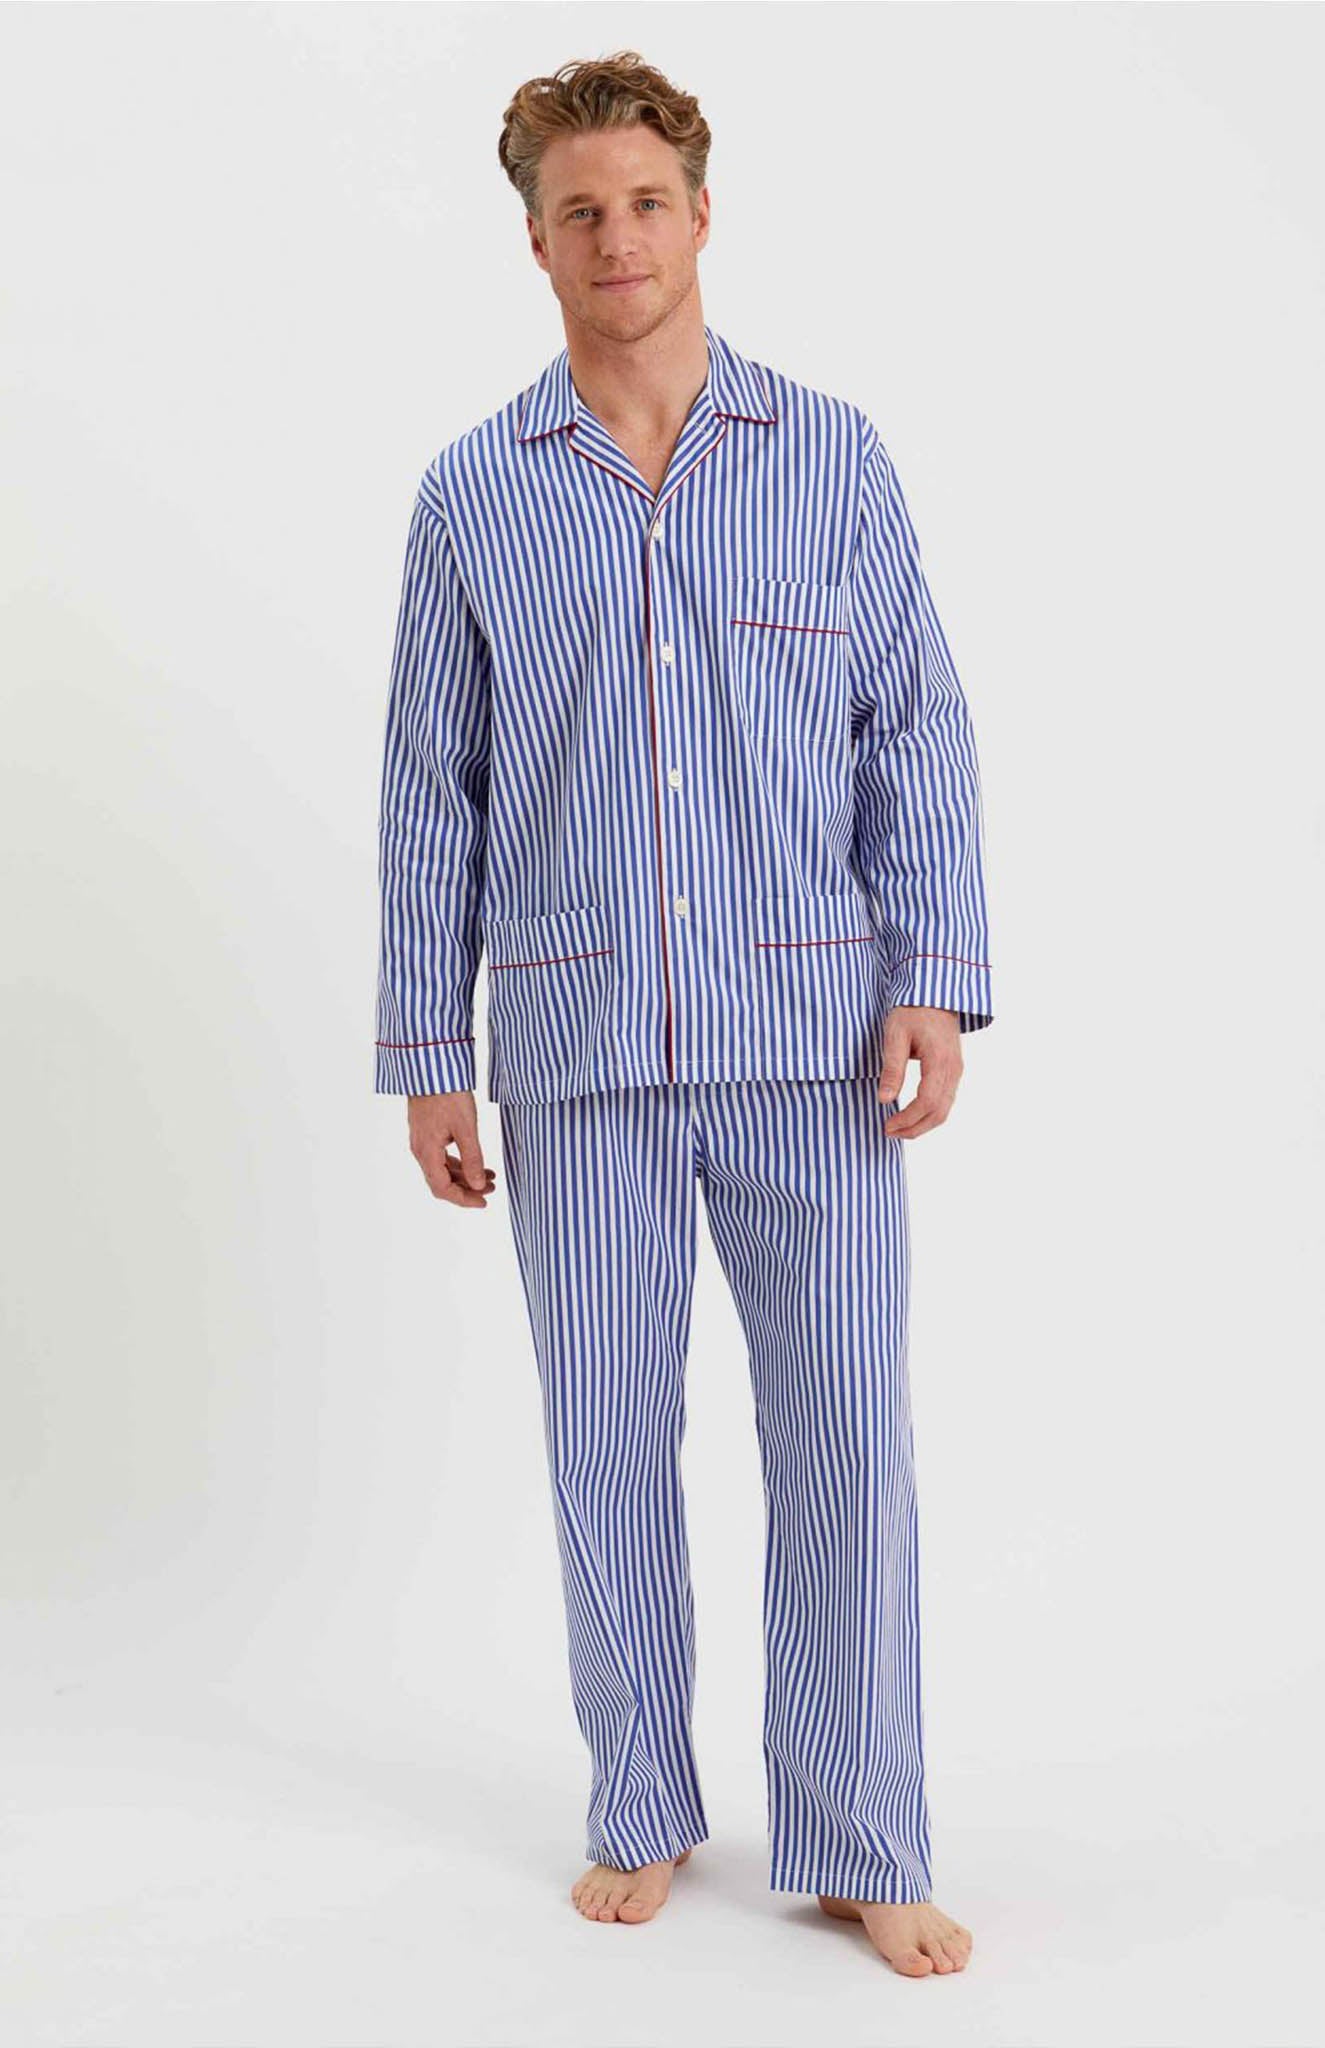 Sea Breeze Stripes | Lounge Wear Set | 100% Cotton | Luxeliv men's wear| sleepwear - blue and white stripes